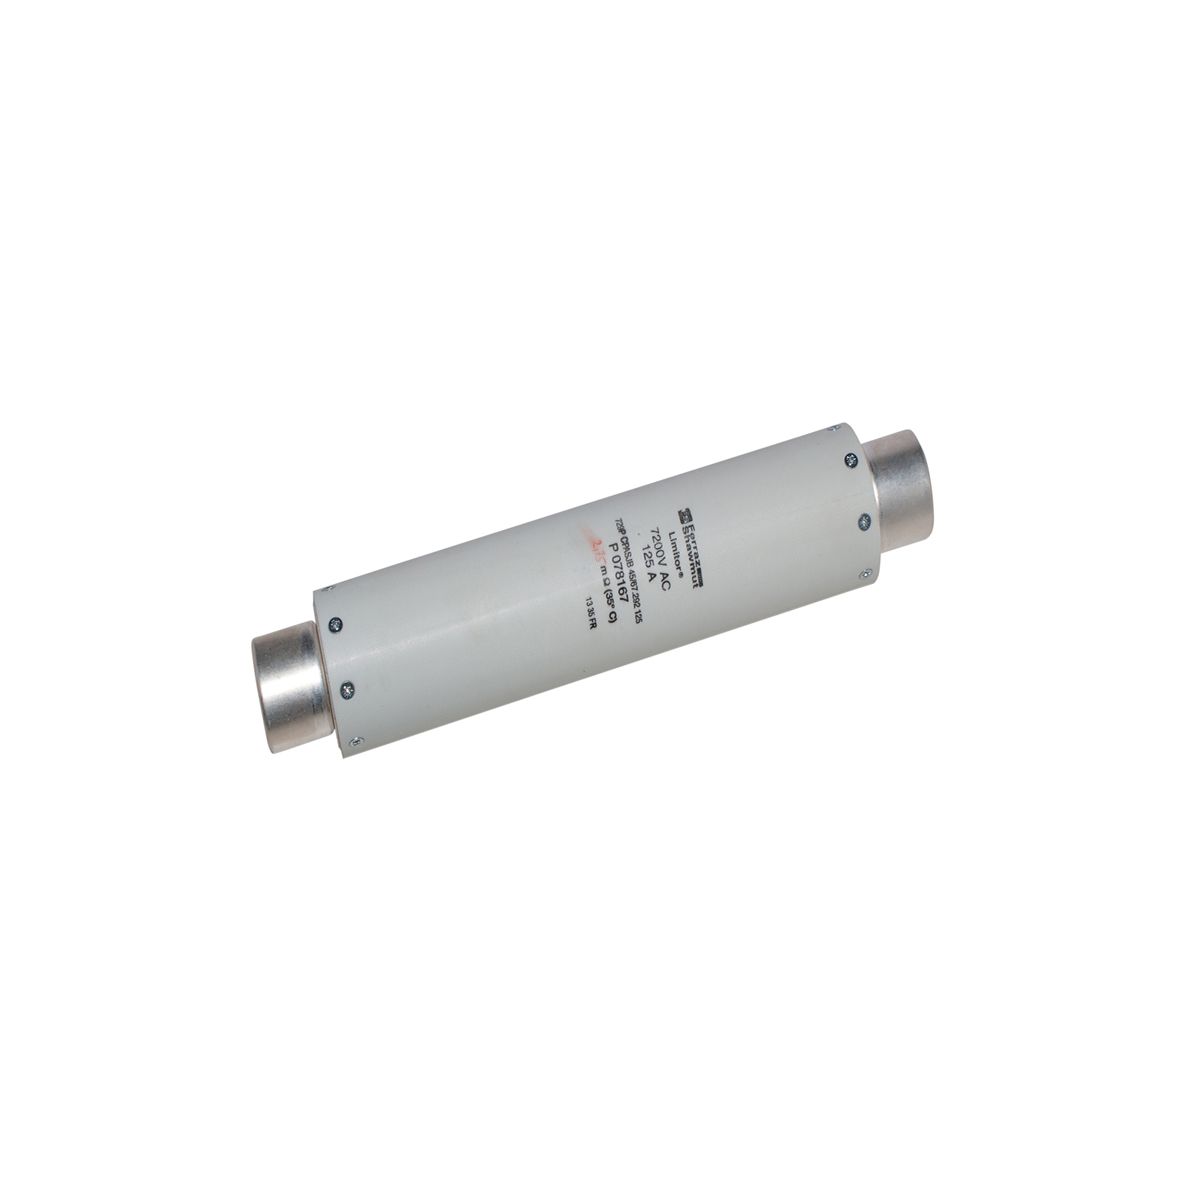 R075524 - DIN 43625 fuse for HV motor, IEC 60644, 292mm, 45mm, striker 50N, 3,6kV, 200A